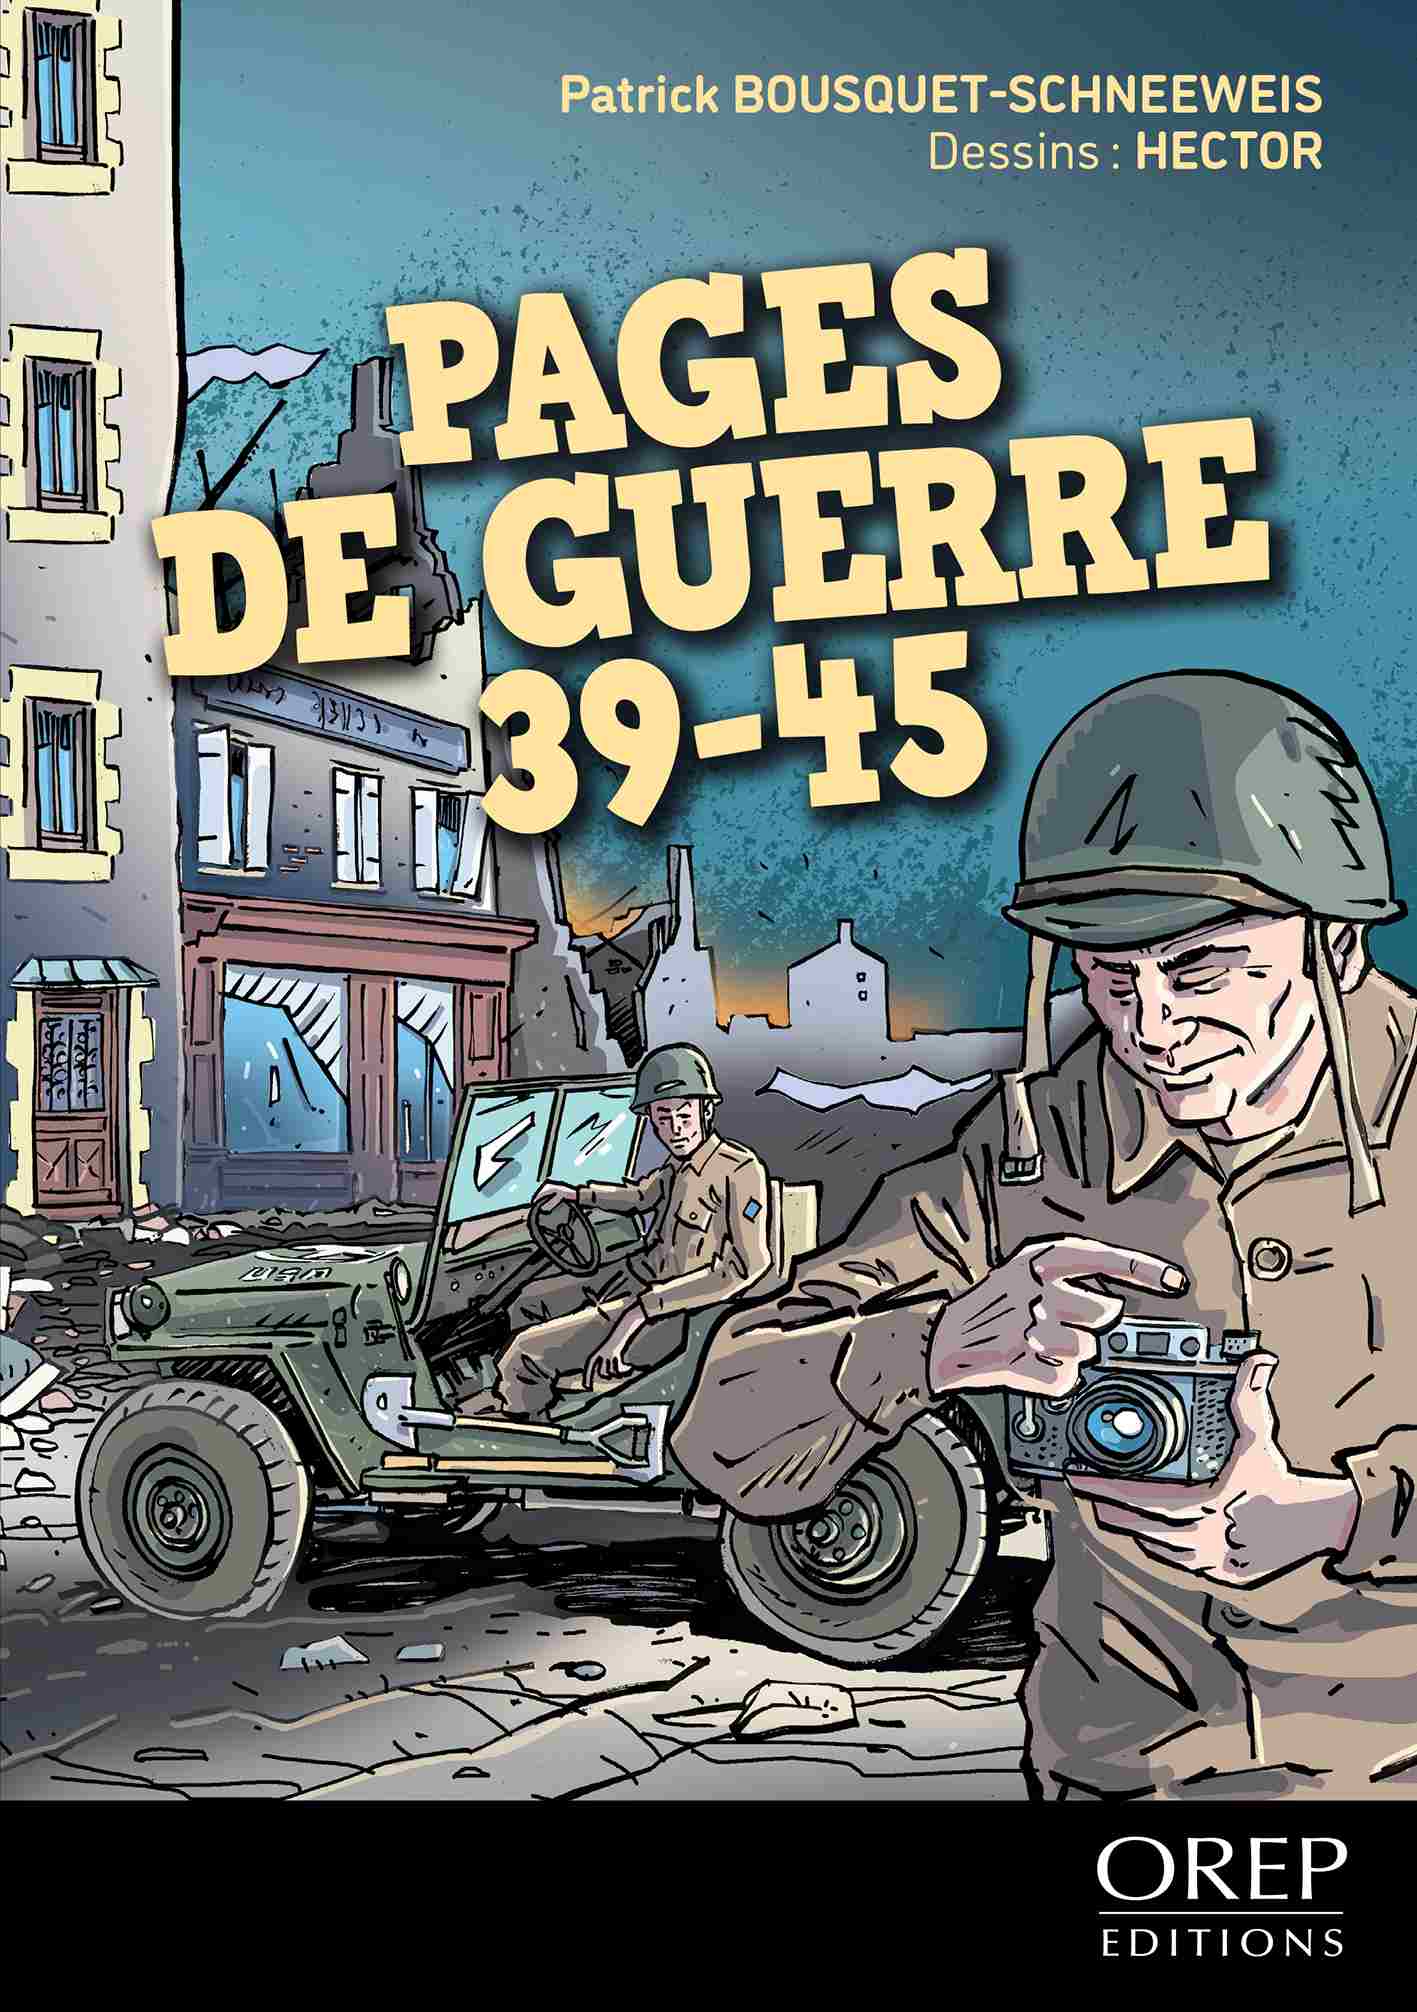 Pages de guerre - 39-45